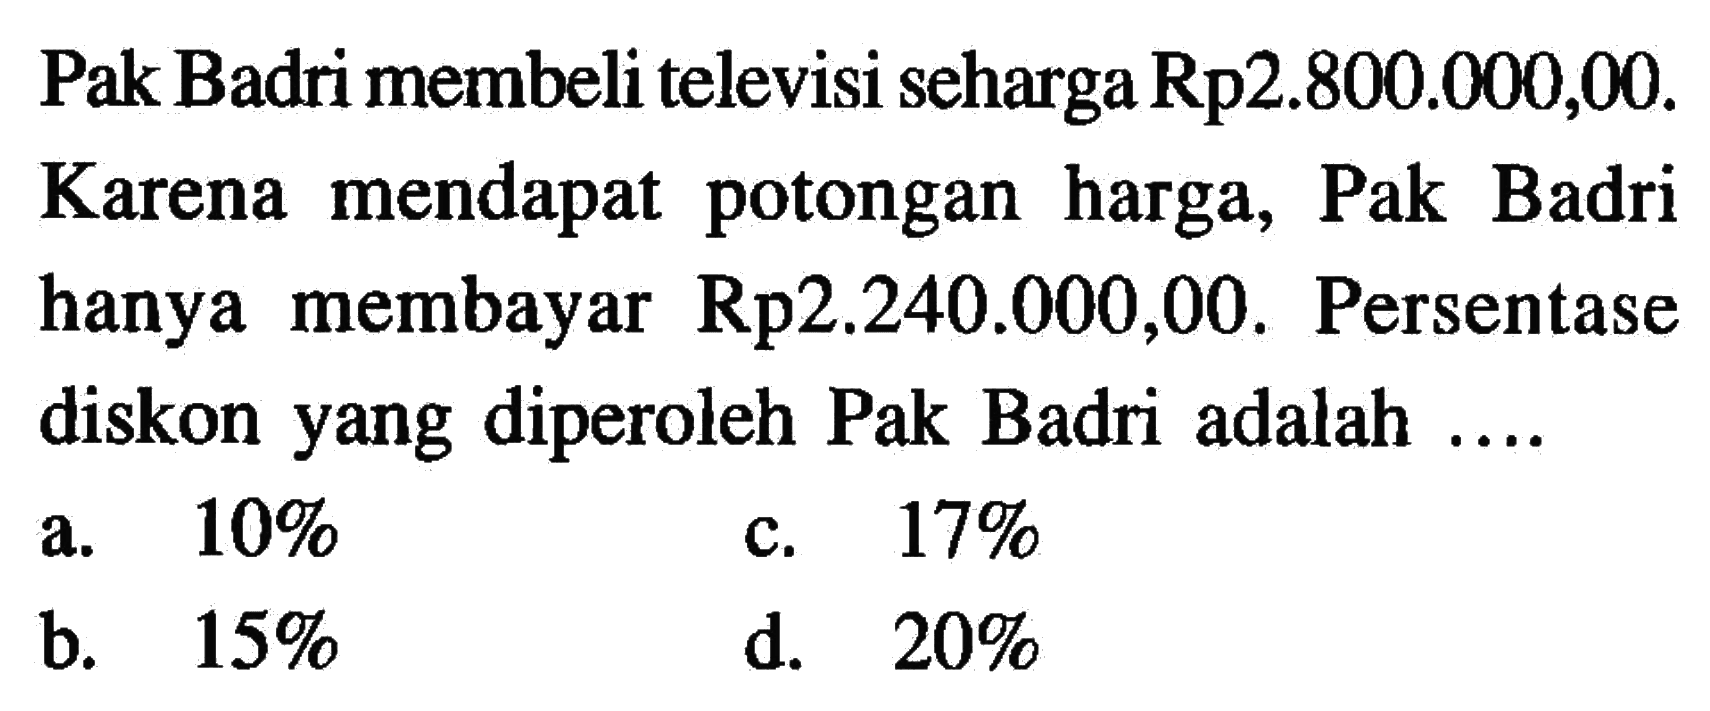 Pak Badri membeli televisi seharga Rp2.800.000,00. Karena mendapat potongan harga, Pak Badri hanya membayar  Rp2.240.000,00. Persentase diskon yang diperoleh Pak Badri adalah ....